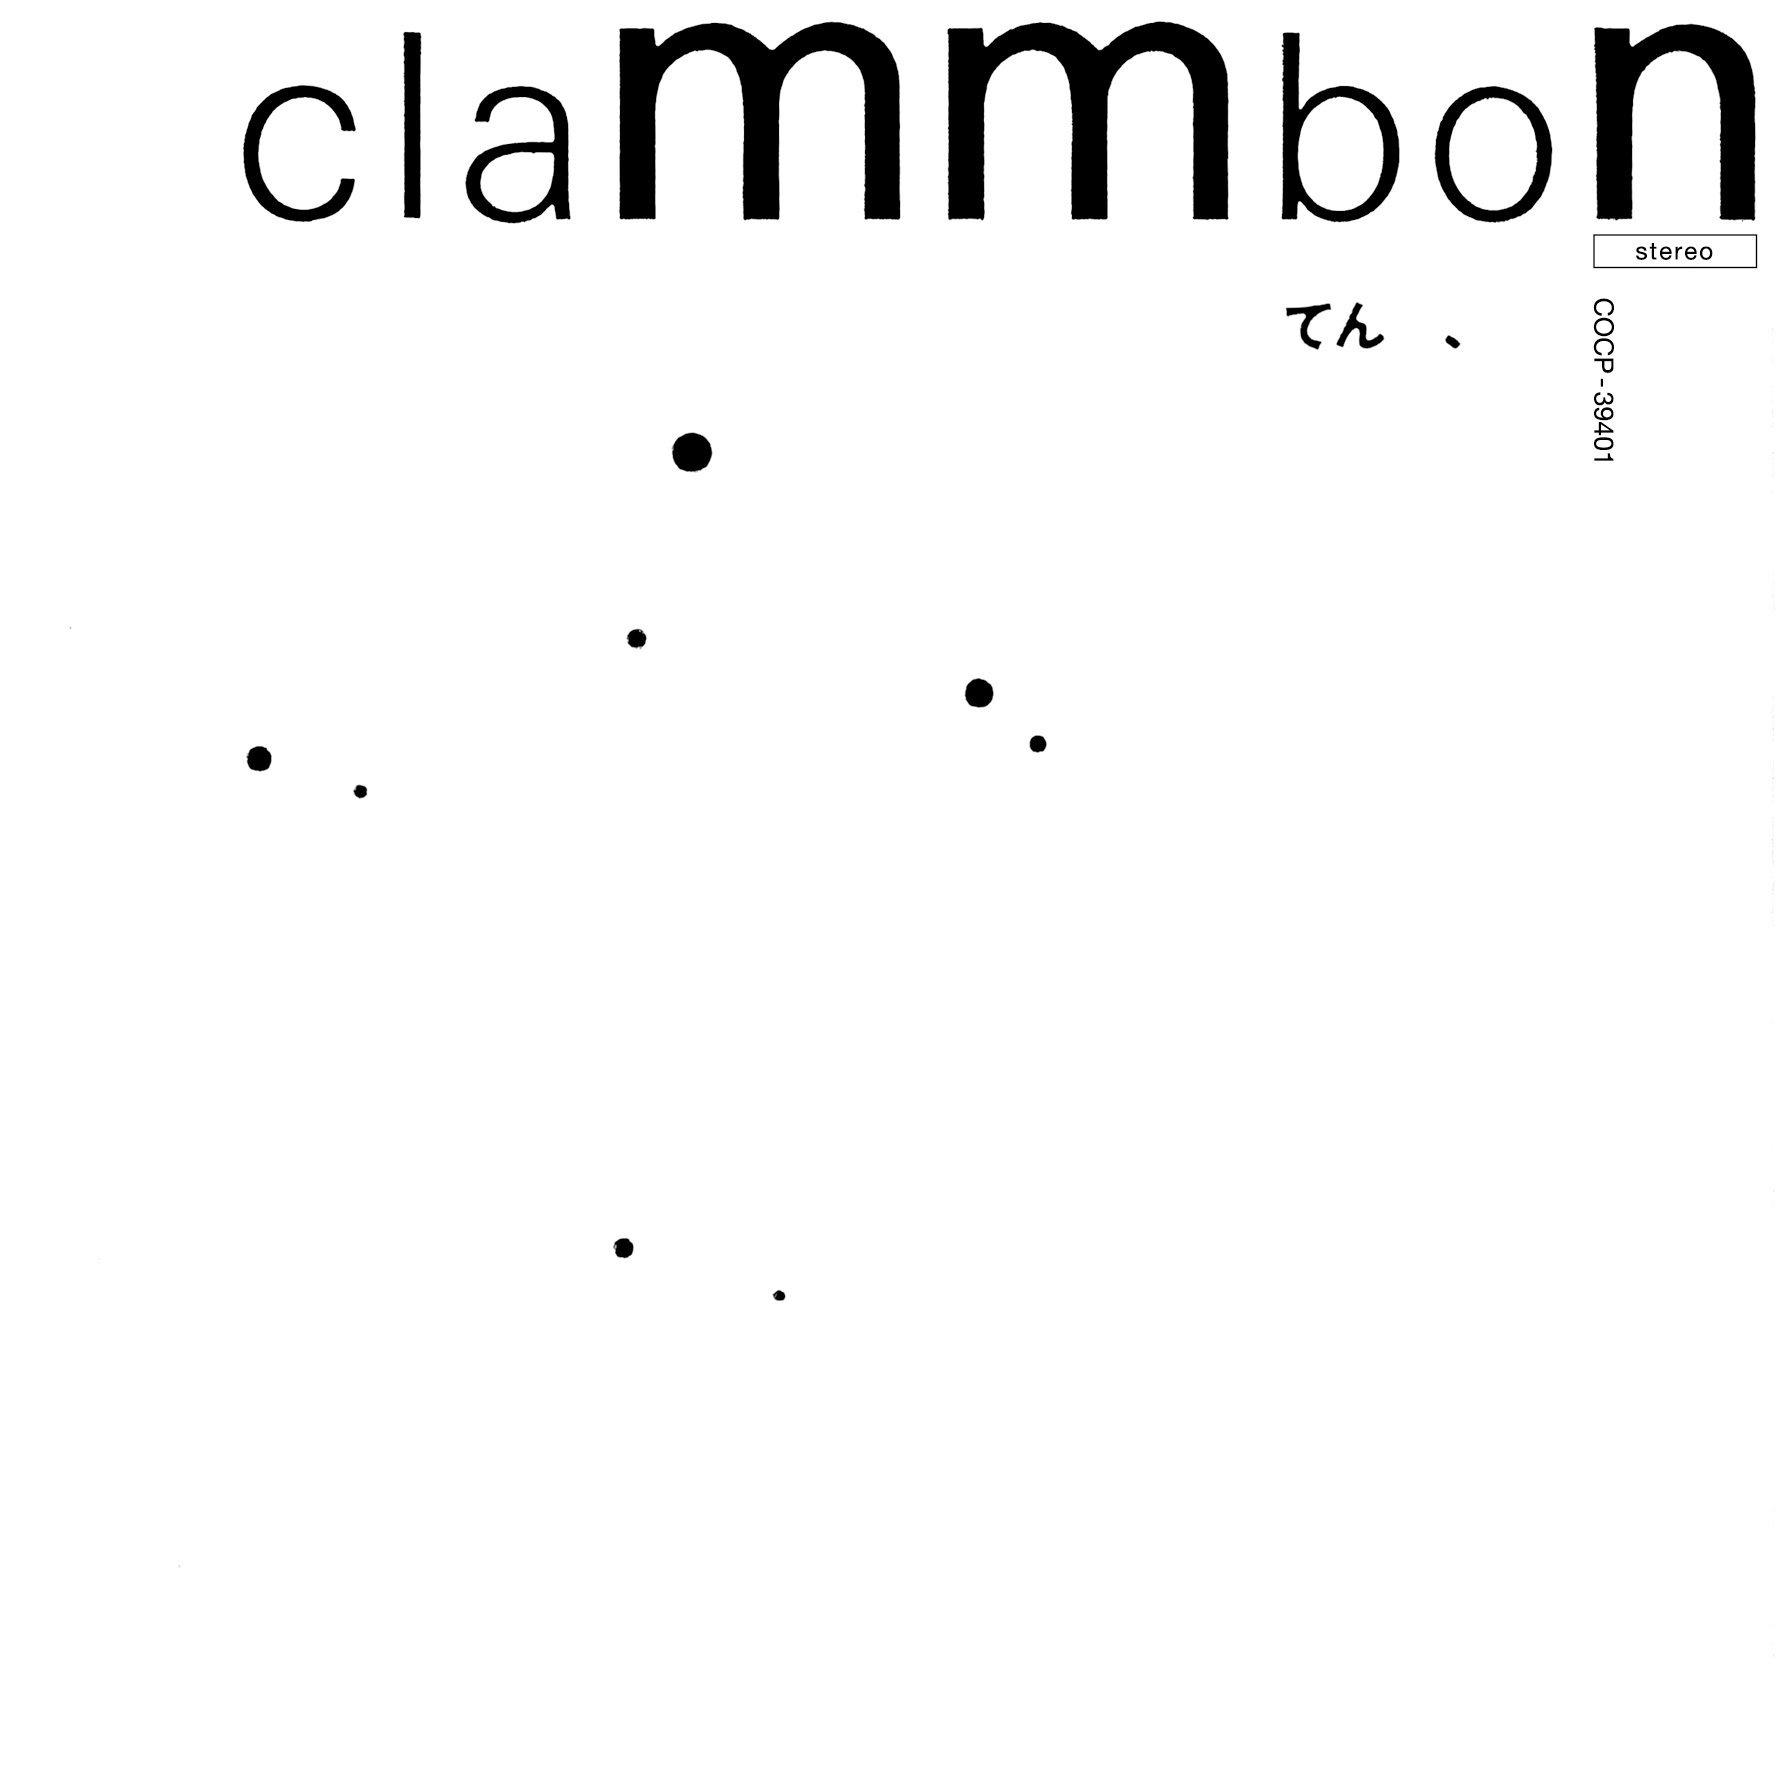 [Album] クラムボン (clammbon) – てん、(stereo) リマスター [FLAC / 24bit Lossless / WEB] [2005.03.02]